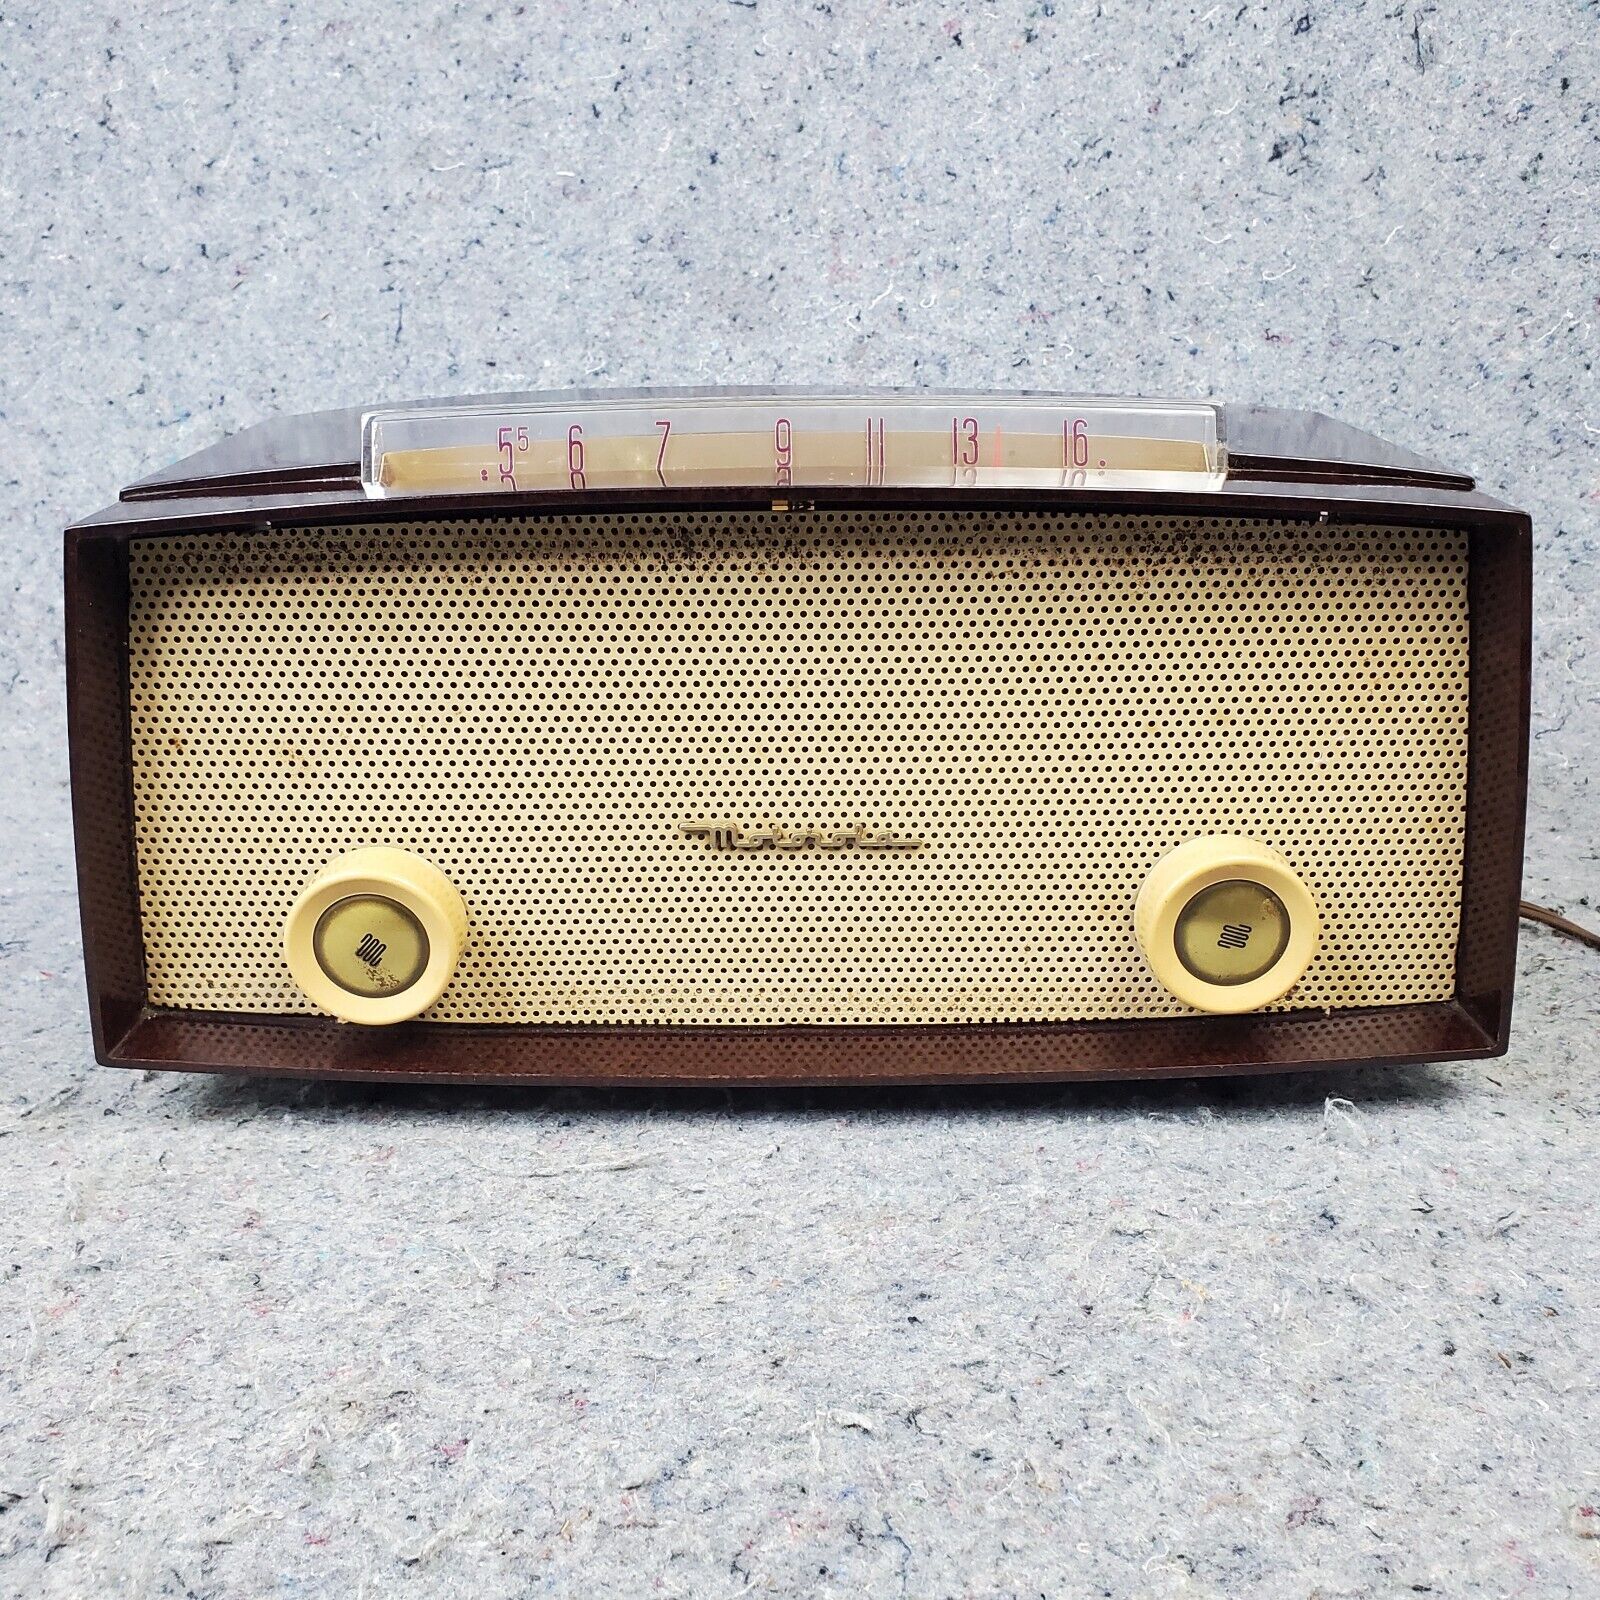 Motorola 52X Tube Radio AM Tabletop Bakelite Vintage MCM 1950's Works